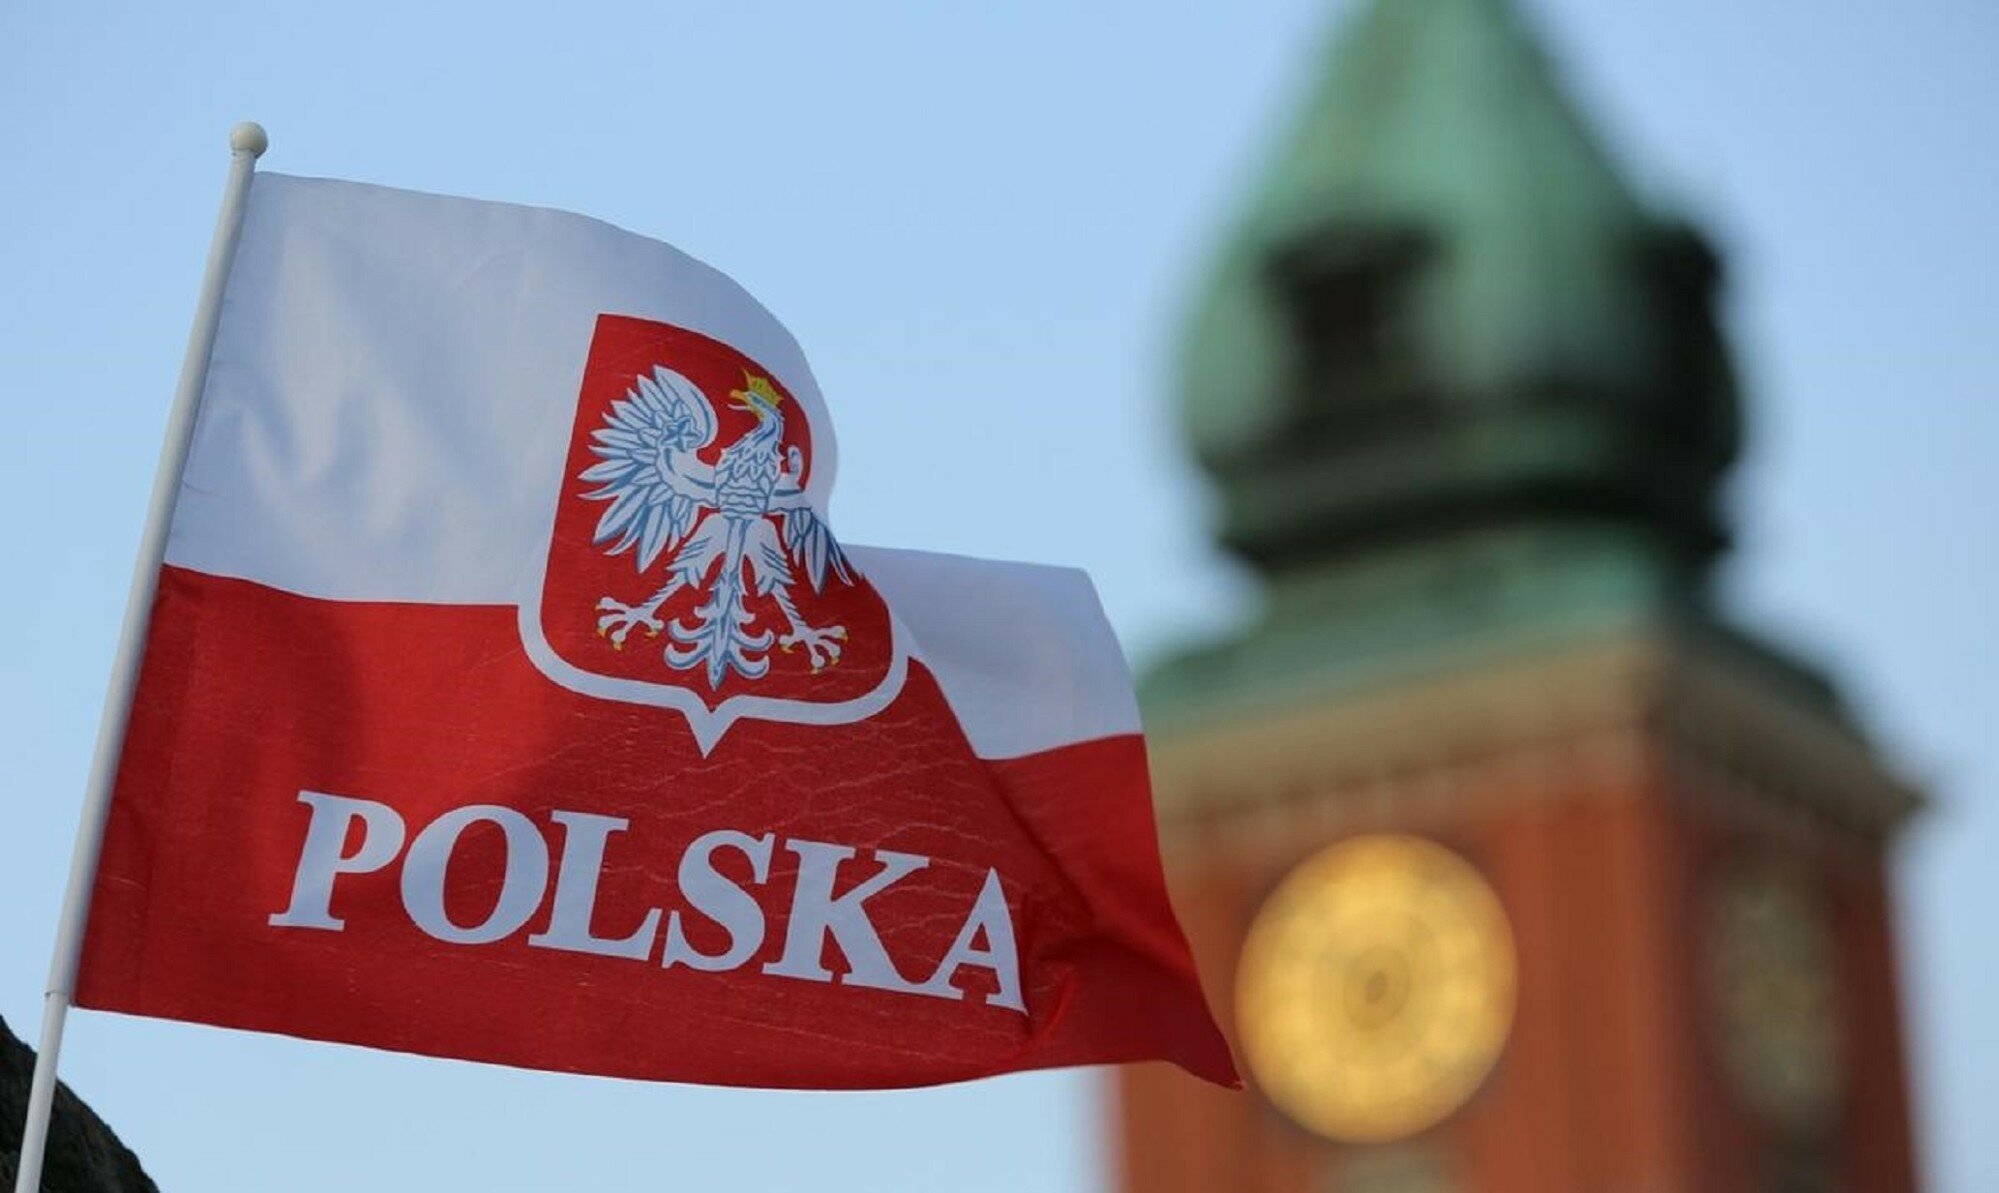 Львівського далекобійника затримали у Польщі з 3,65 проміле алкоголю